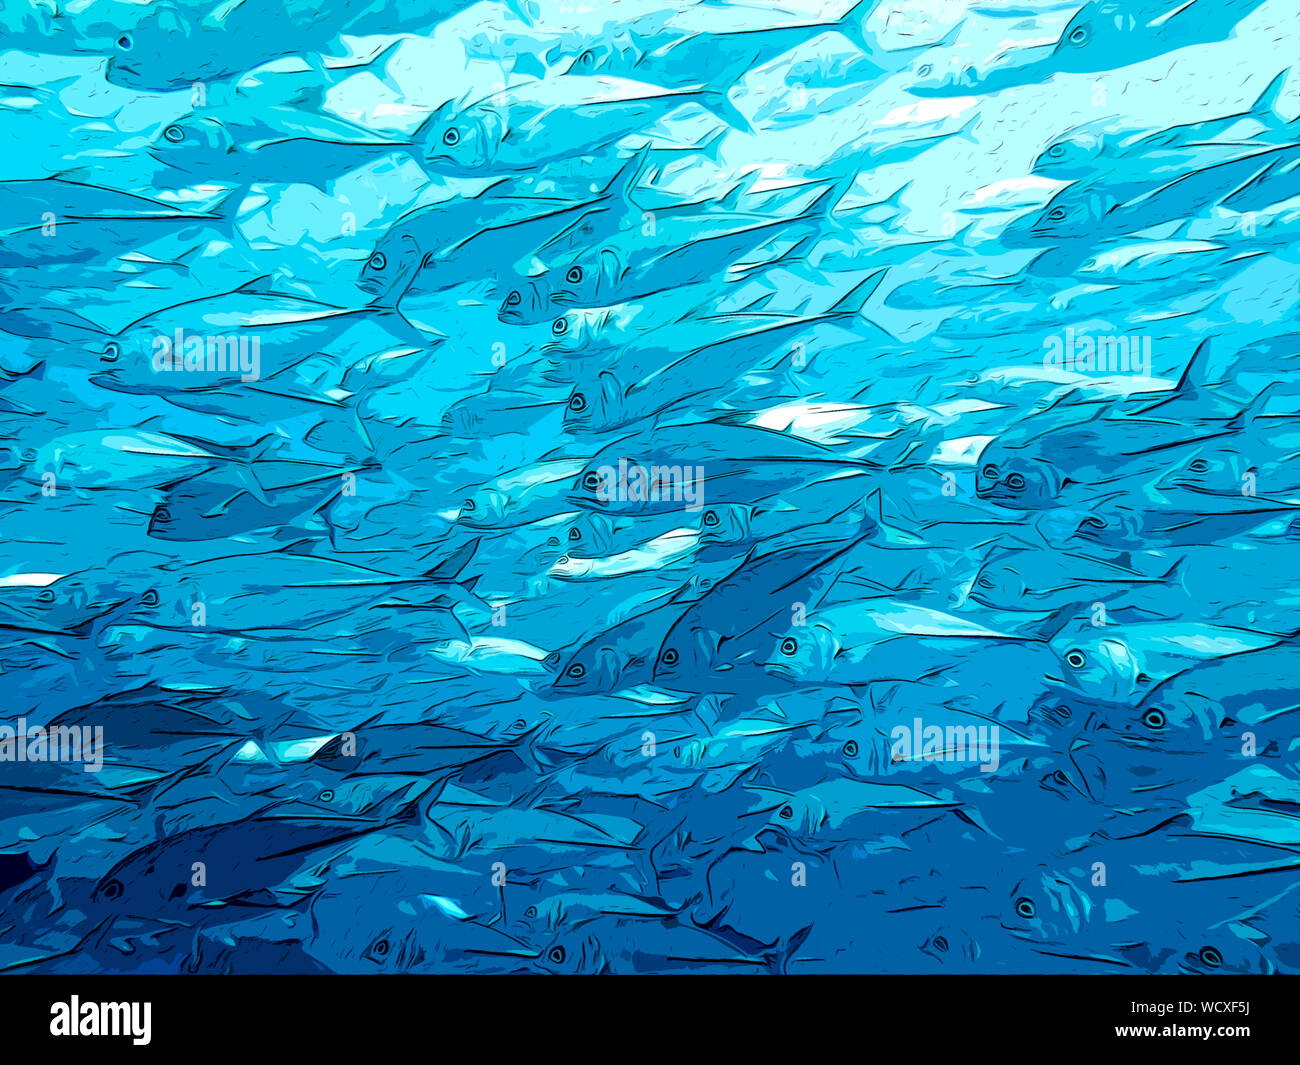 Banc de poissons en bancs, et la scolarisation - sous l'illustration de l'Art Banque D'Images